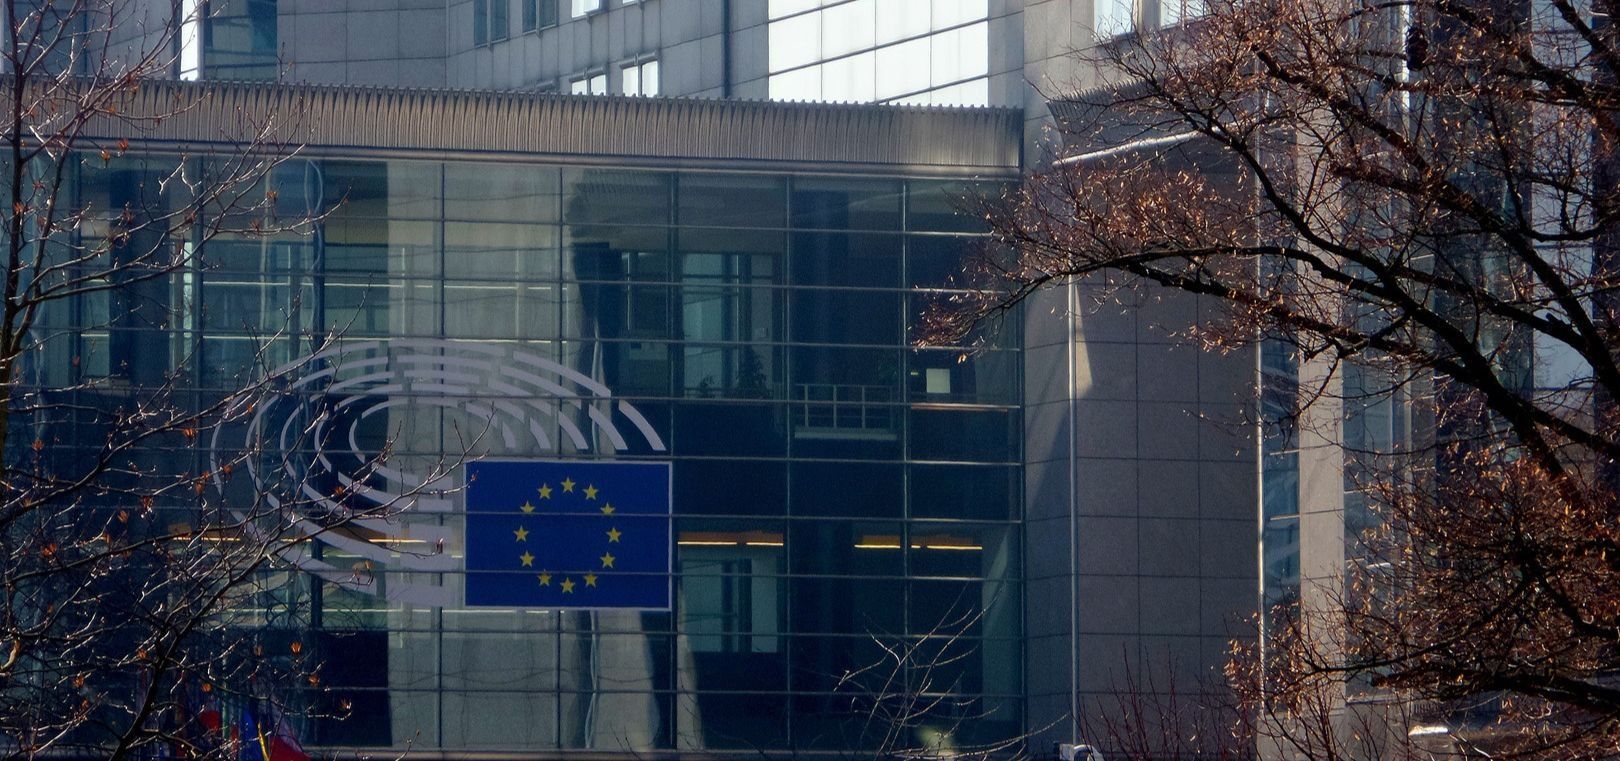 Sede del Parlamento Europeo (Foto: @Europarl_ES)